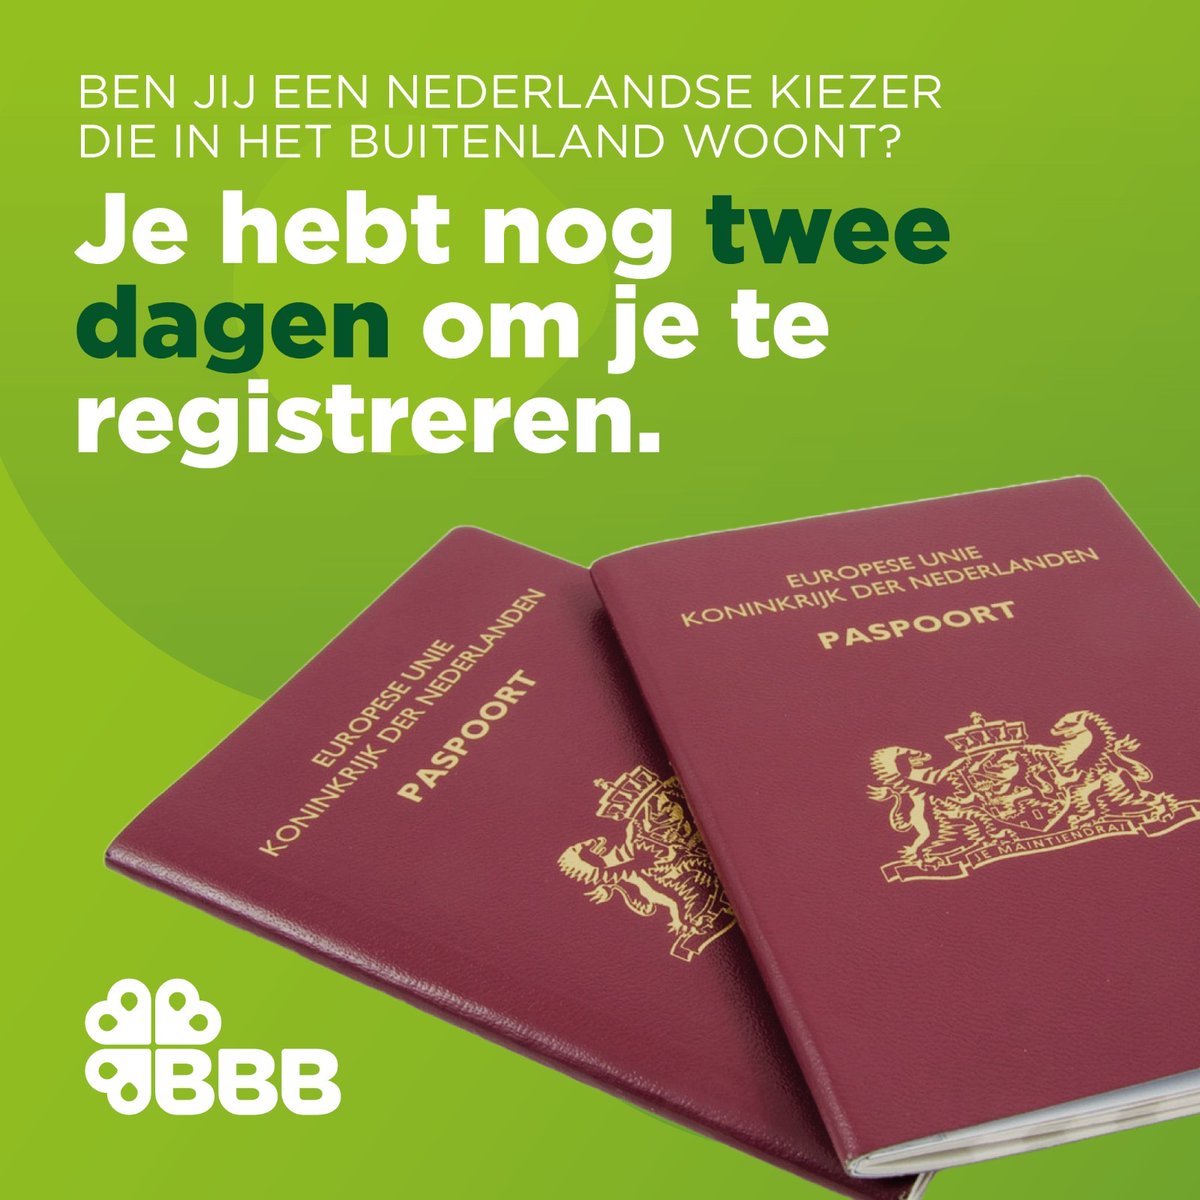 🚨 Ben jij een kiezer in het buitenland? Registreer je als kiezer! Op 6 juni zijn de Europese Verkiezingen. Om te stemmen vanuit het buitenland moet je je registreren als kiezer. Dat kan nog tot en met donderdag 25 april! Registeren kan hier: denhaag.nl/nl/verkiezinge…